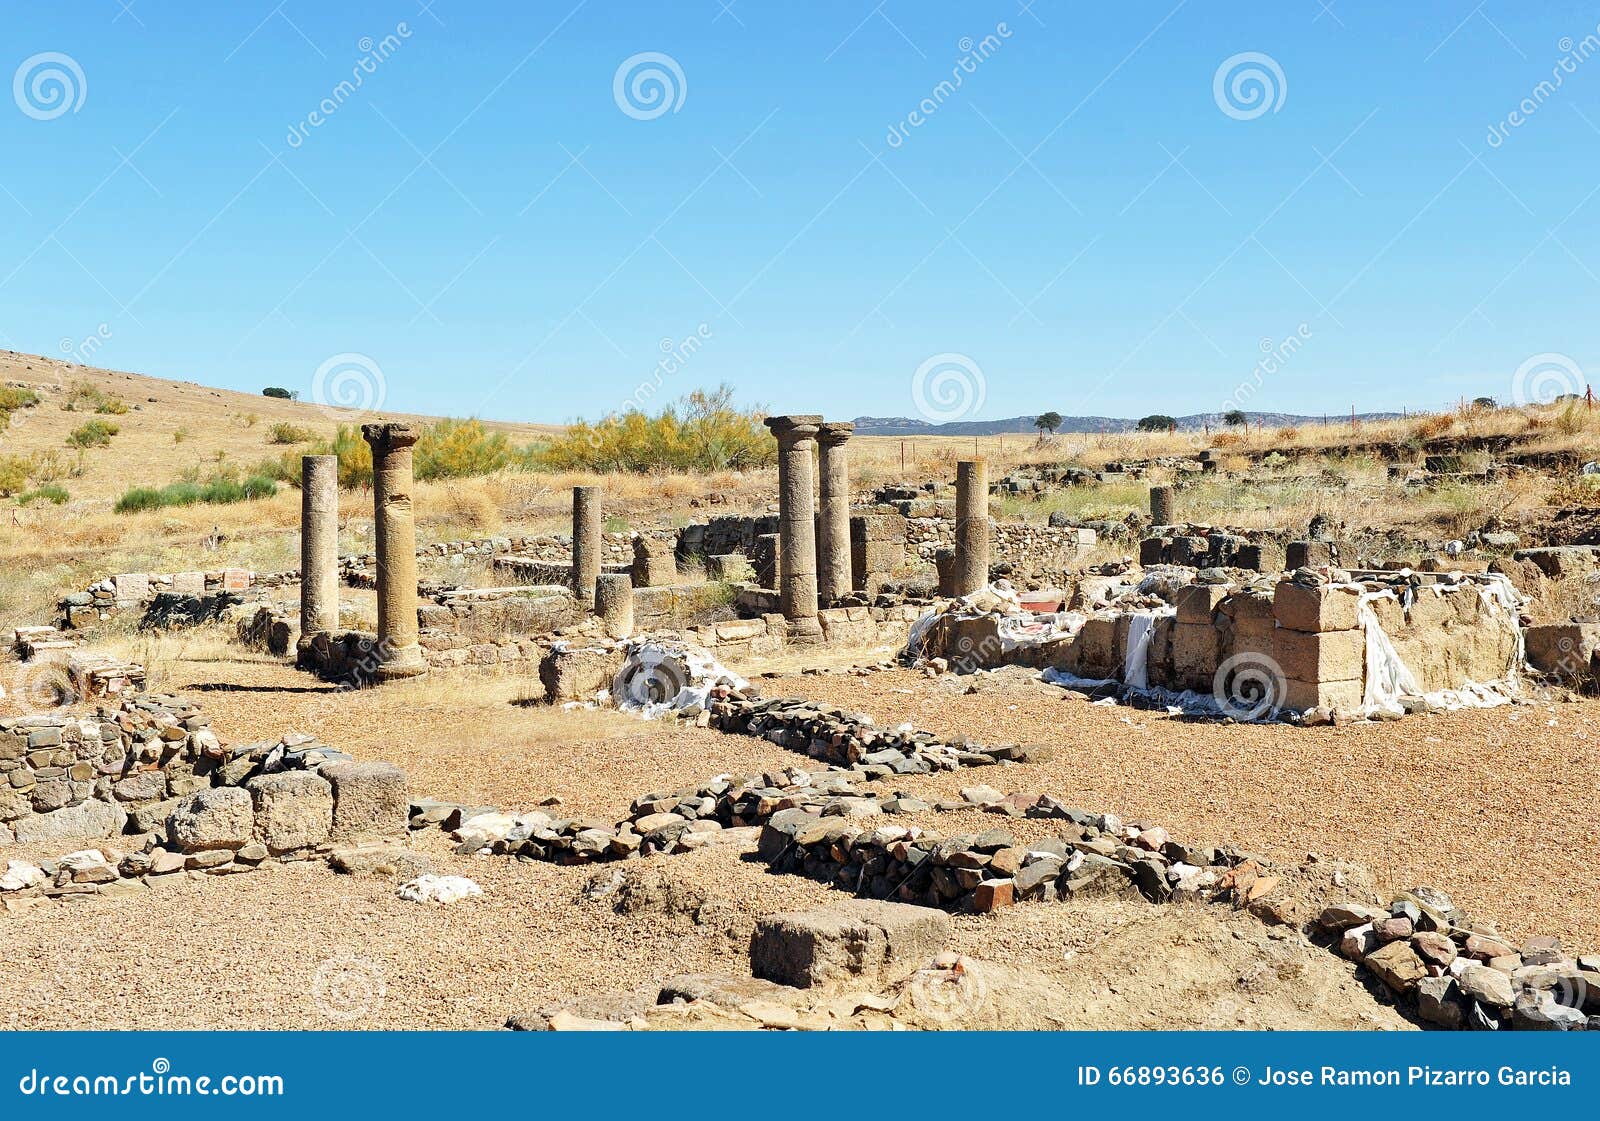 archeological excavations in the roman sisapo city, la bienvenida, ciudad real province, spain